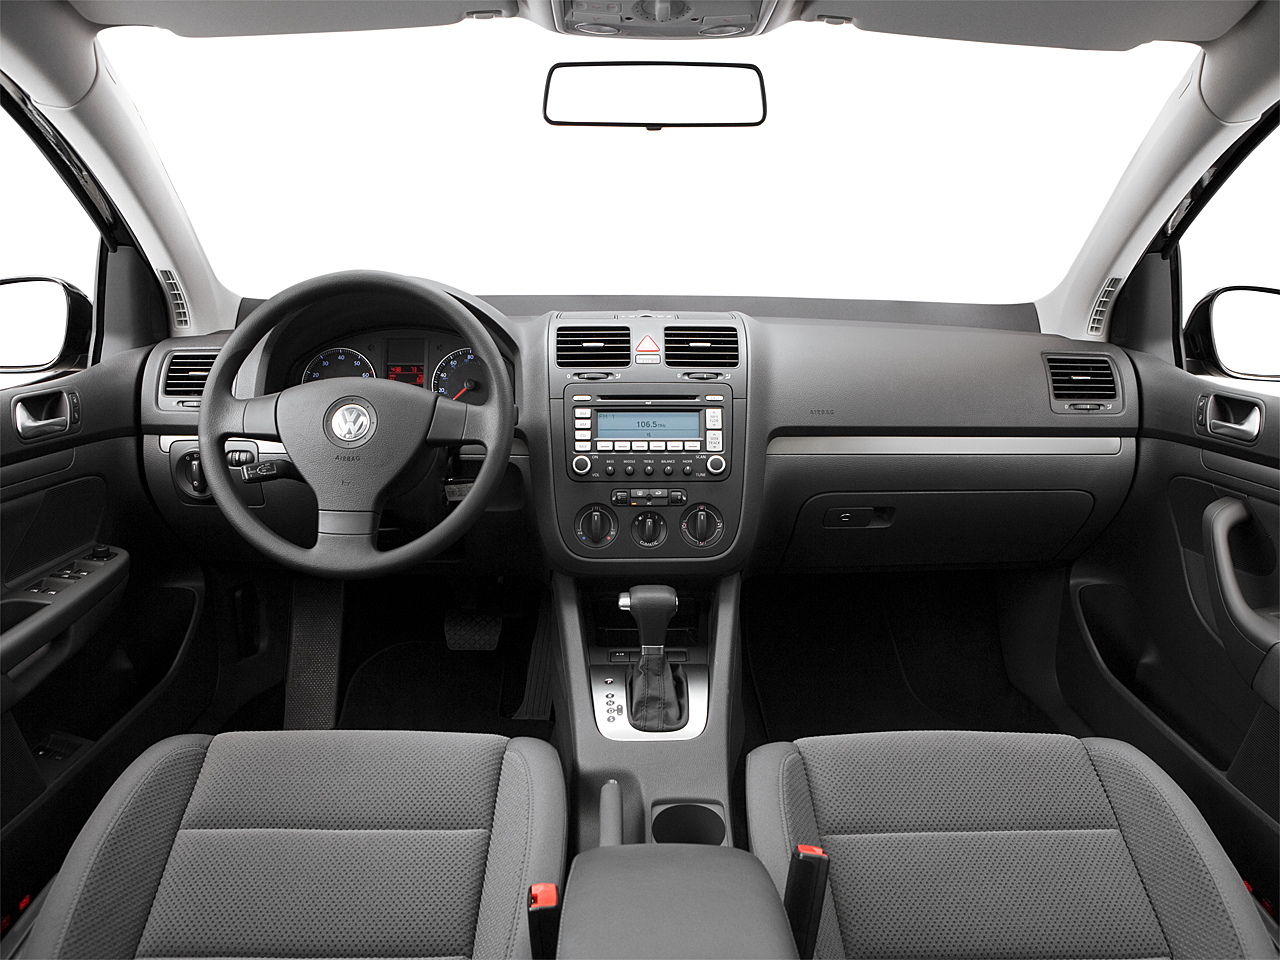 2007 Volkswagen Rabbit PZEV 4dr Hatchback (2.5L I5 6A) - Research -  GrooveCar